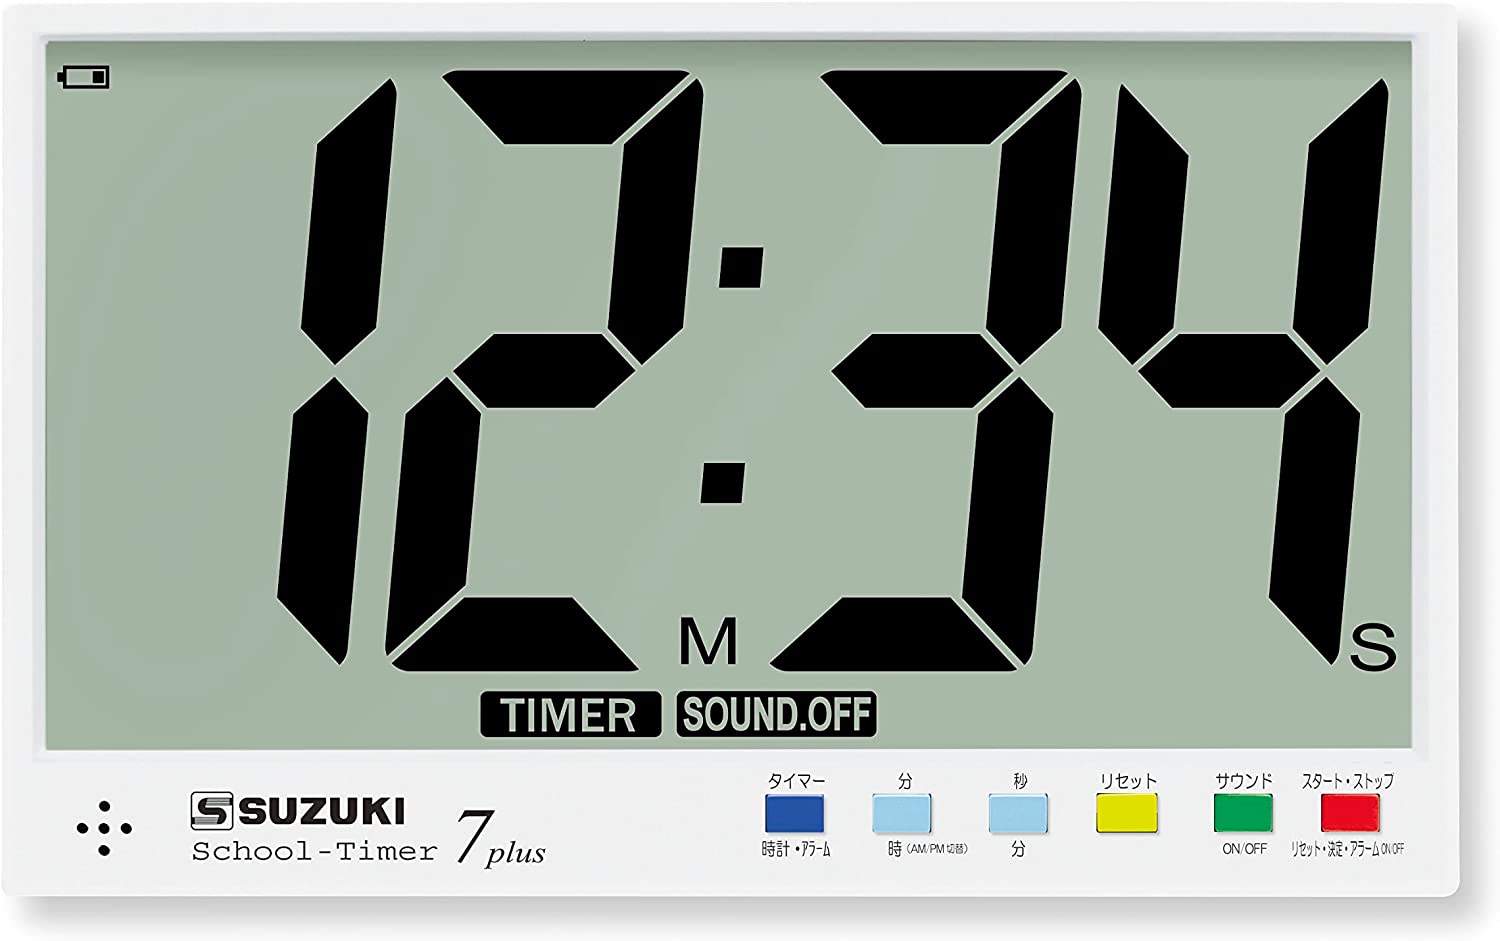  Suzuki school таймер 7plus 5plus пришедший на смену SUZUKI STEX-05P STEX-07P Suzuki музыкальные инструменты большой экран 